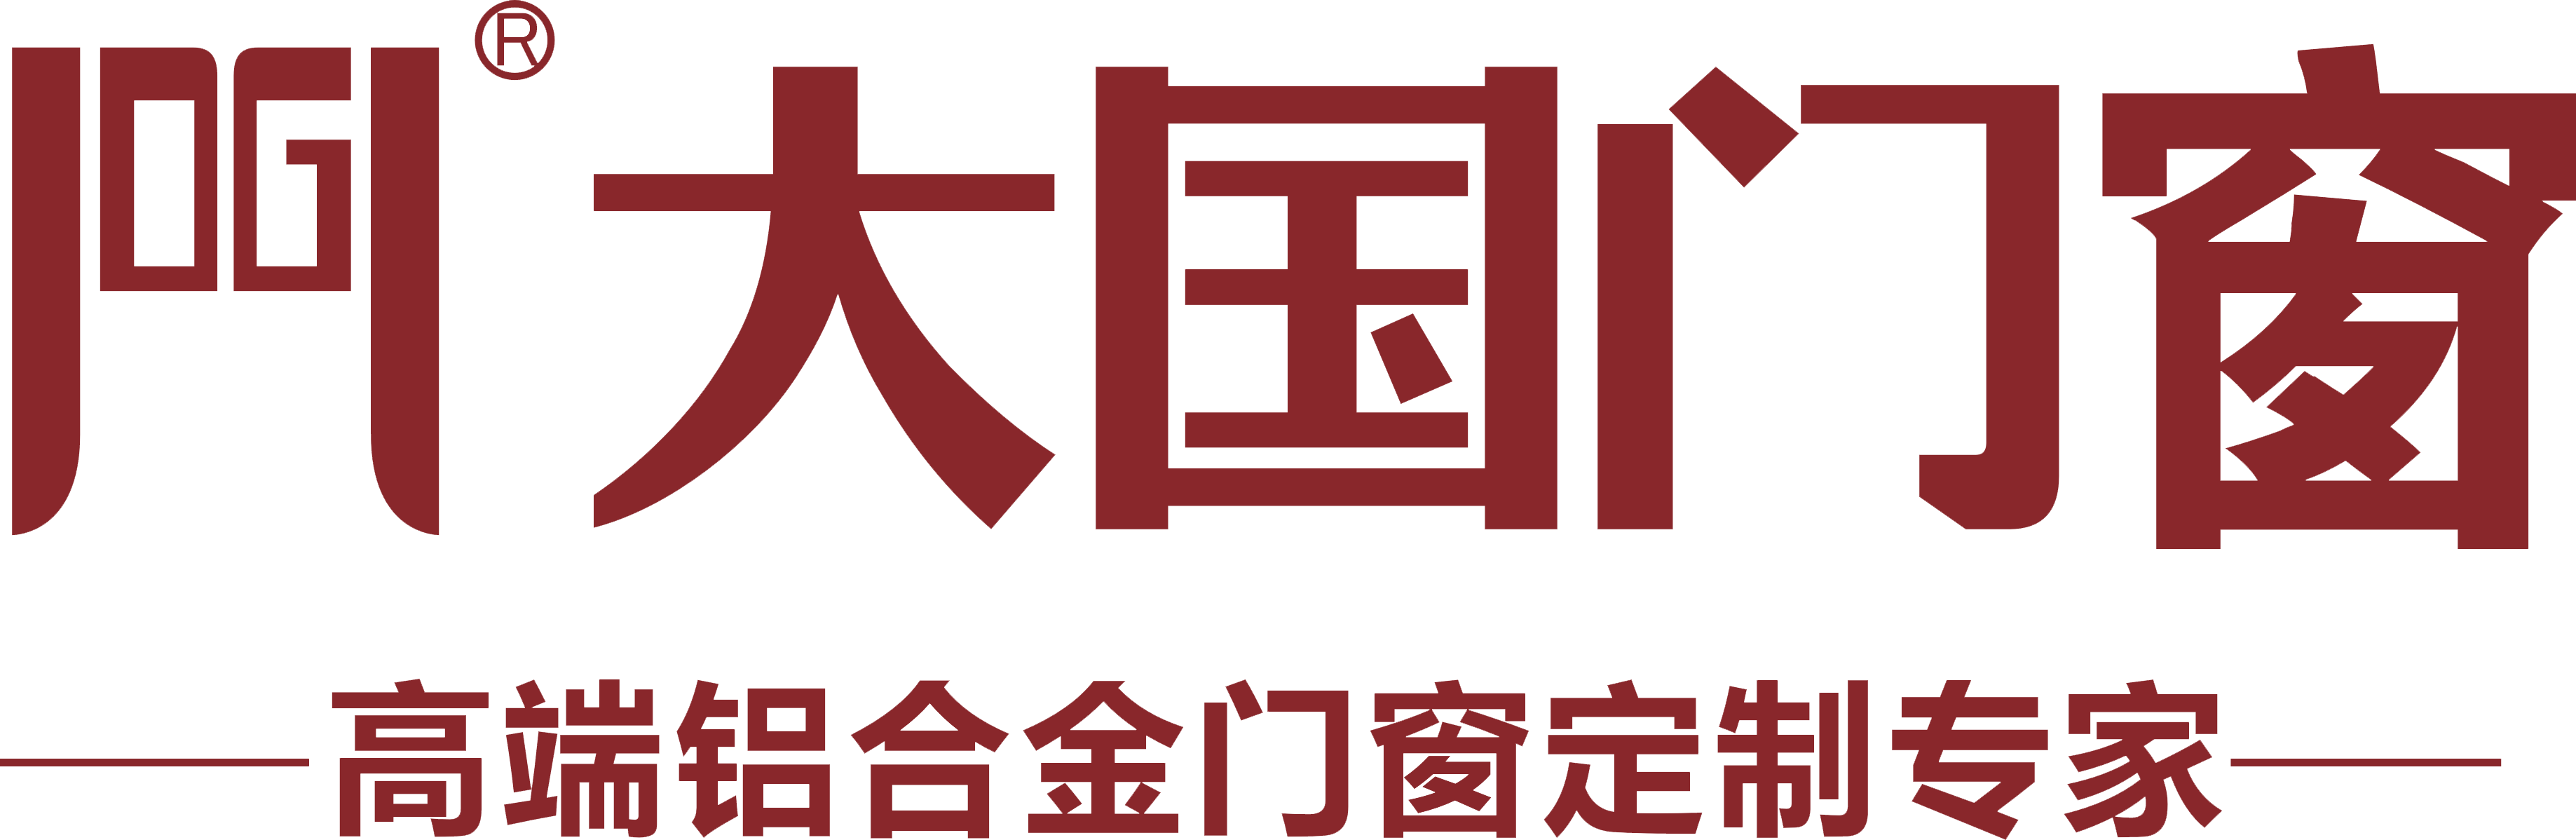 大国logo.png